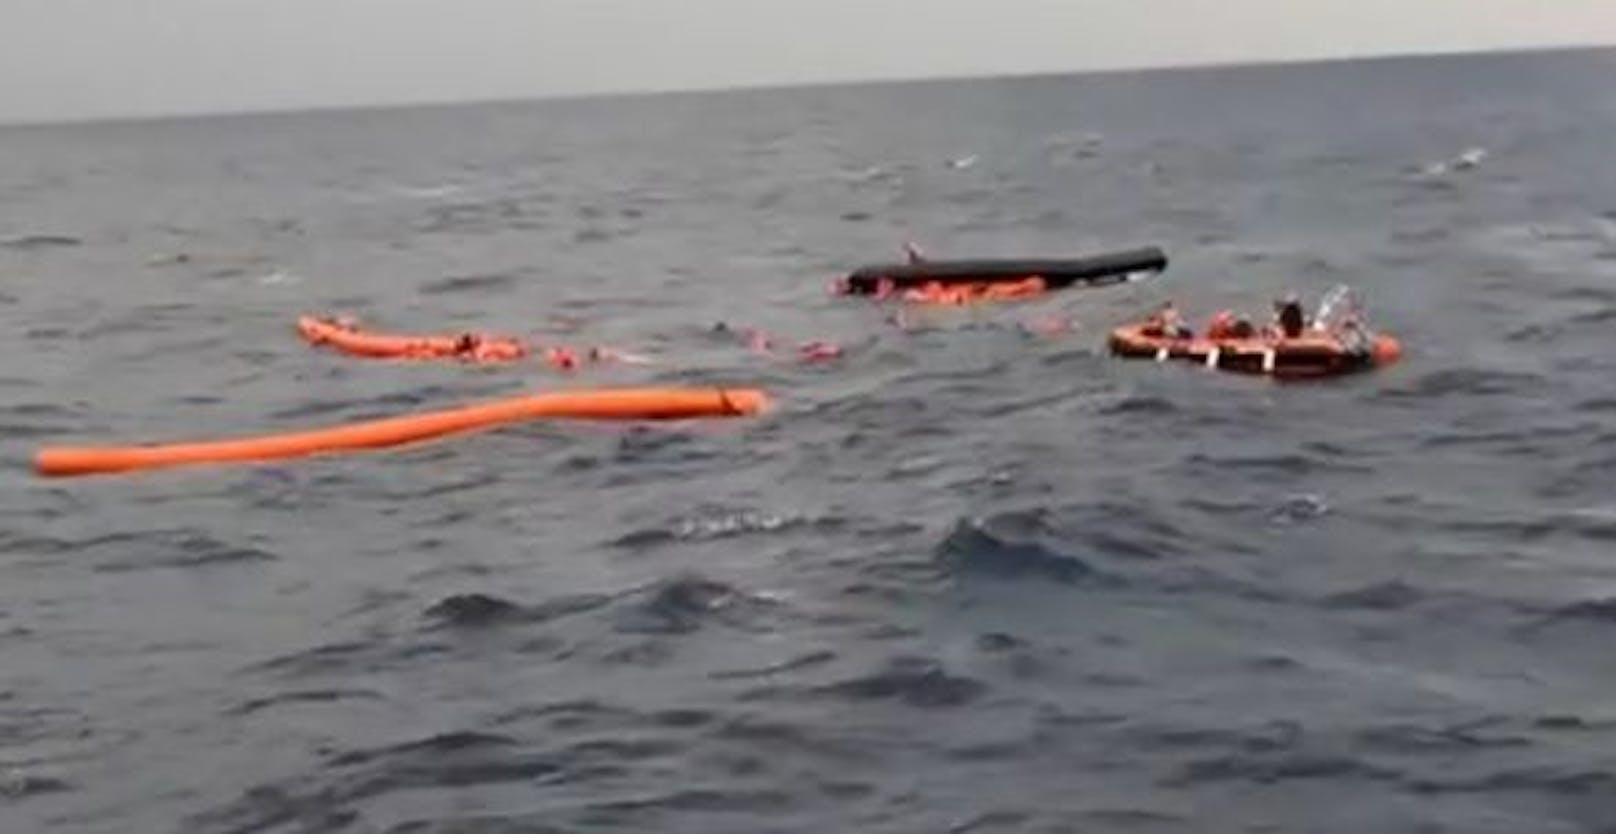 An Bord des Bootes sollen mehr als 120 Menschen gewesen sein, darunter auch Kinder.